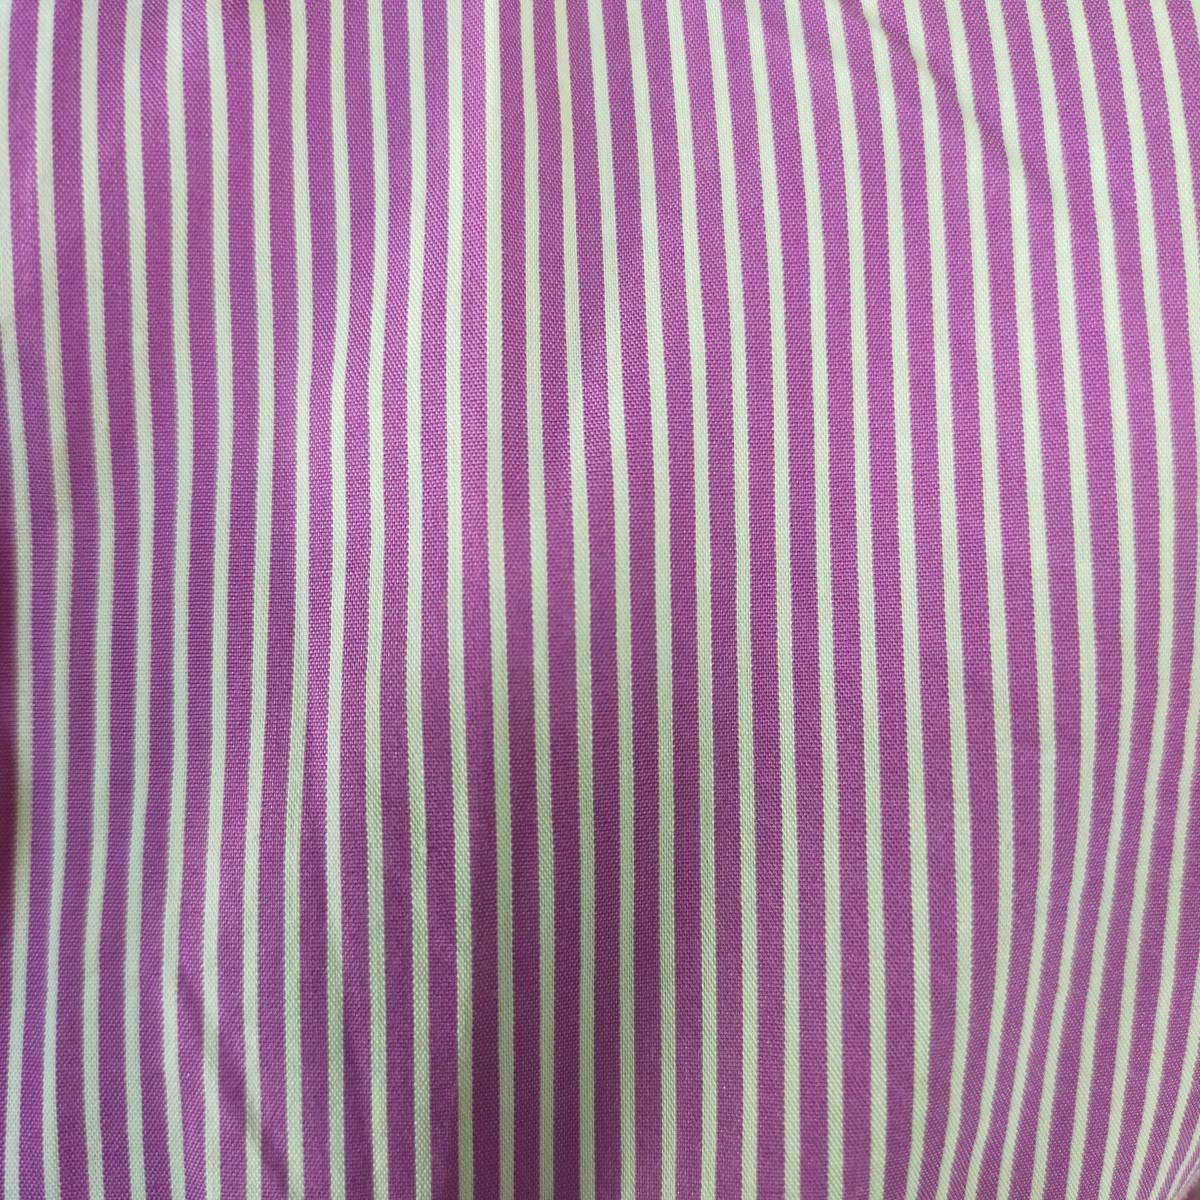 ナラカミーチェ NARACAMICIE シャツ サイズⅡ M パープル ホワイト 紫 白 ストライプ 開襟 長袖 シンプル オフィス 綿 爽やか 1959 